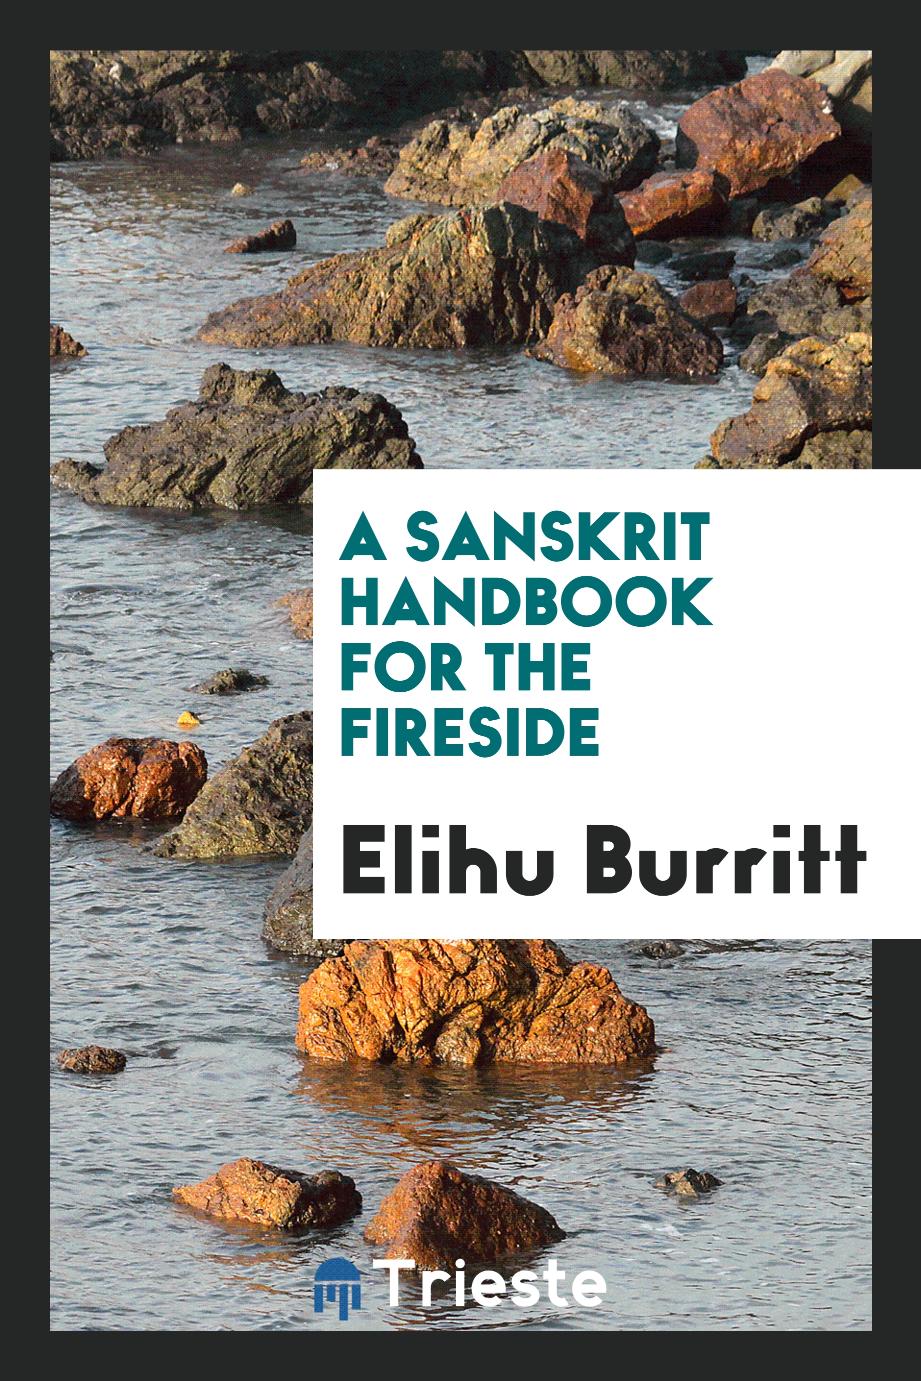 A Sanskrit Handbook for the Fireside